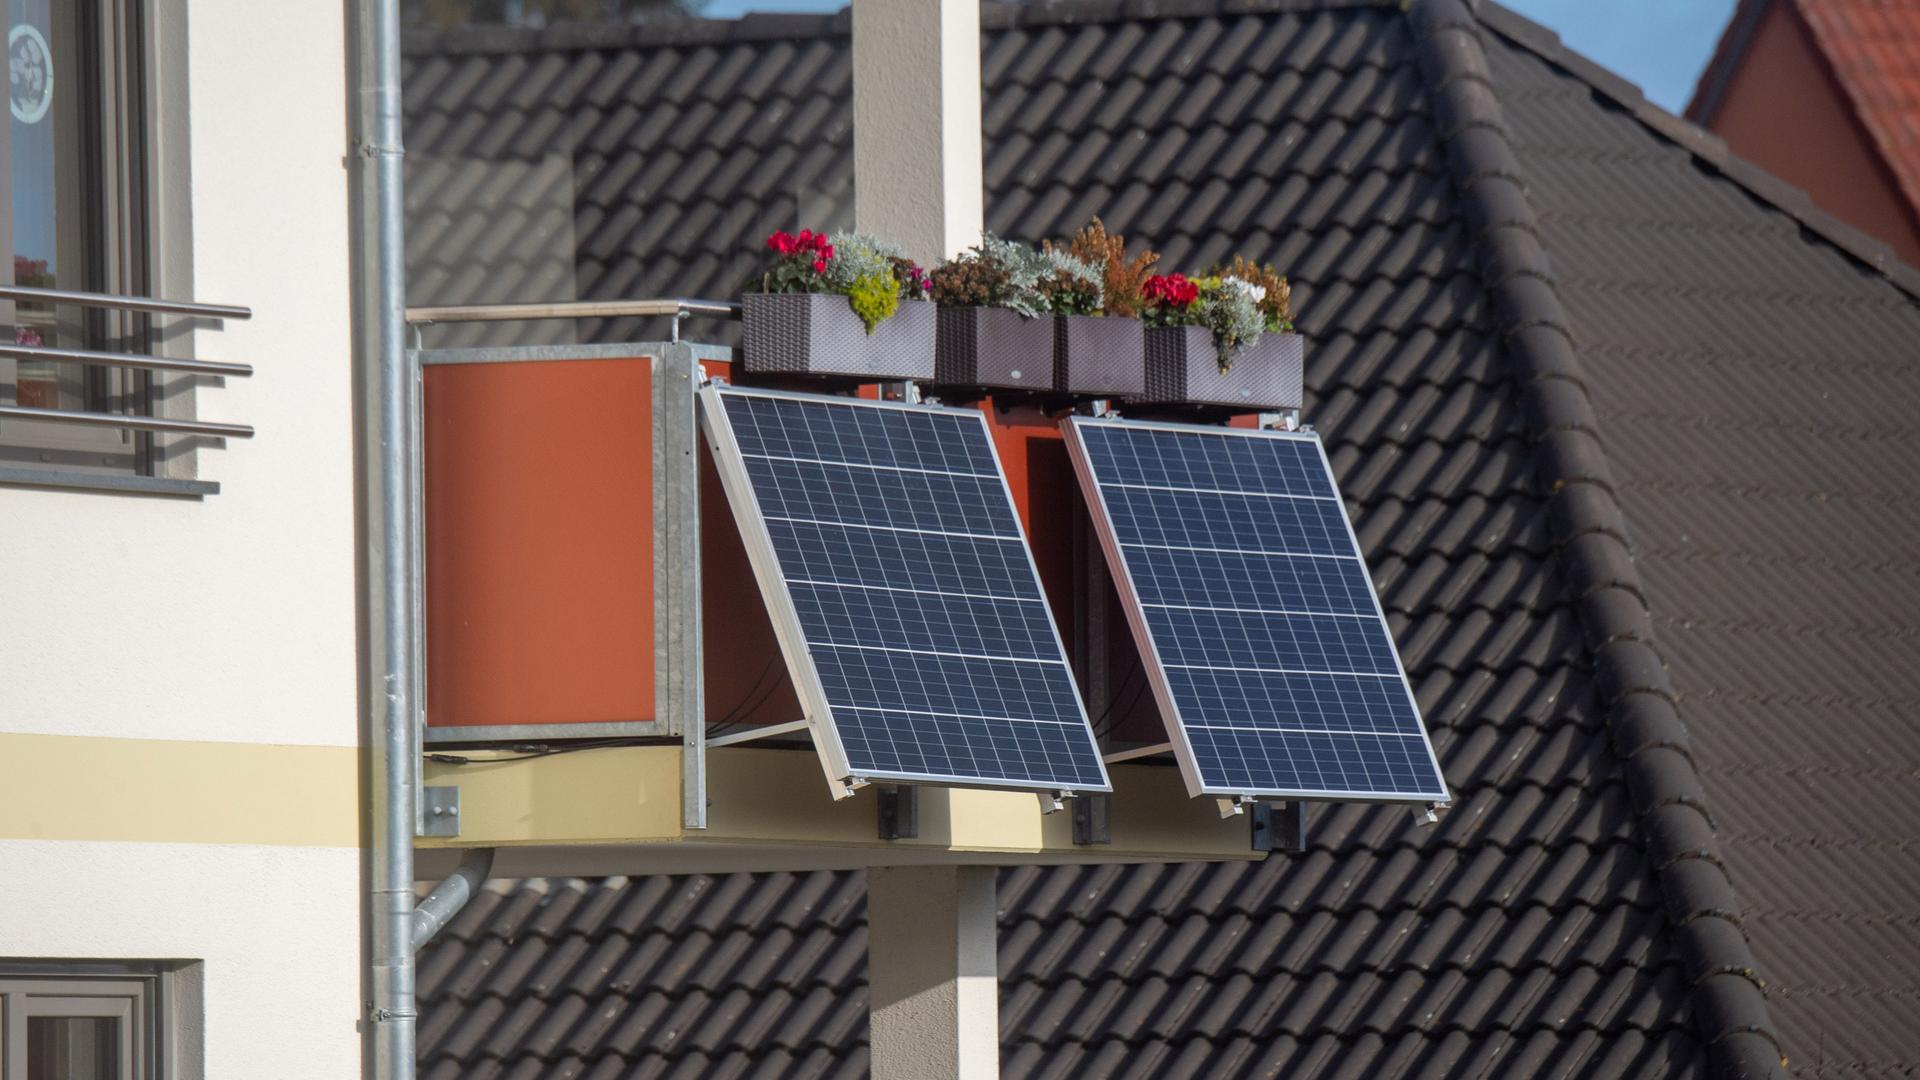 Solarmodule für ein sogenanntes Balkonkraftwerk hängen an einem Balkon unter bunt bepflanzten Blumenkästen.